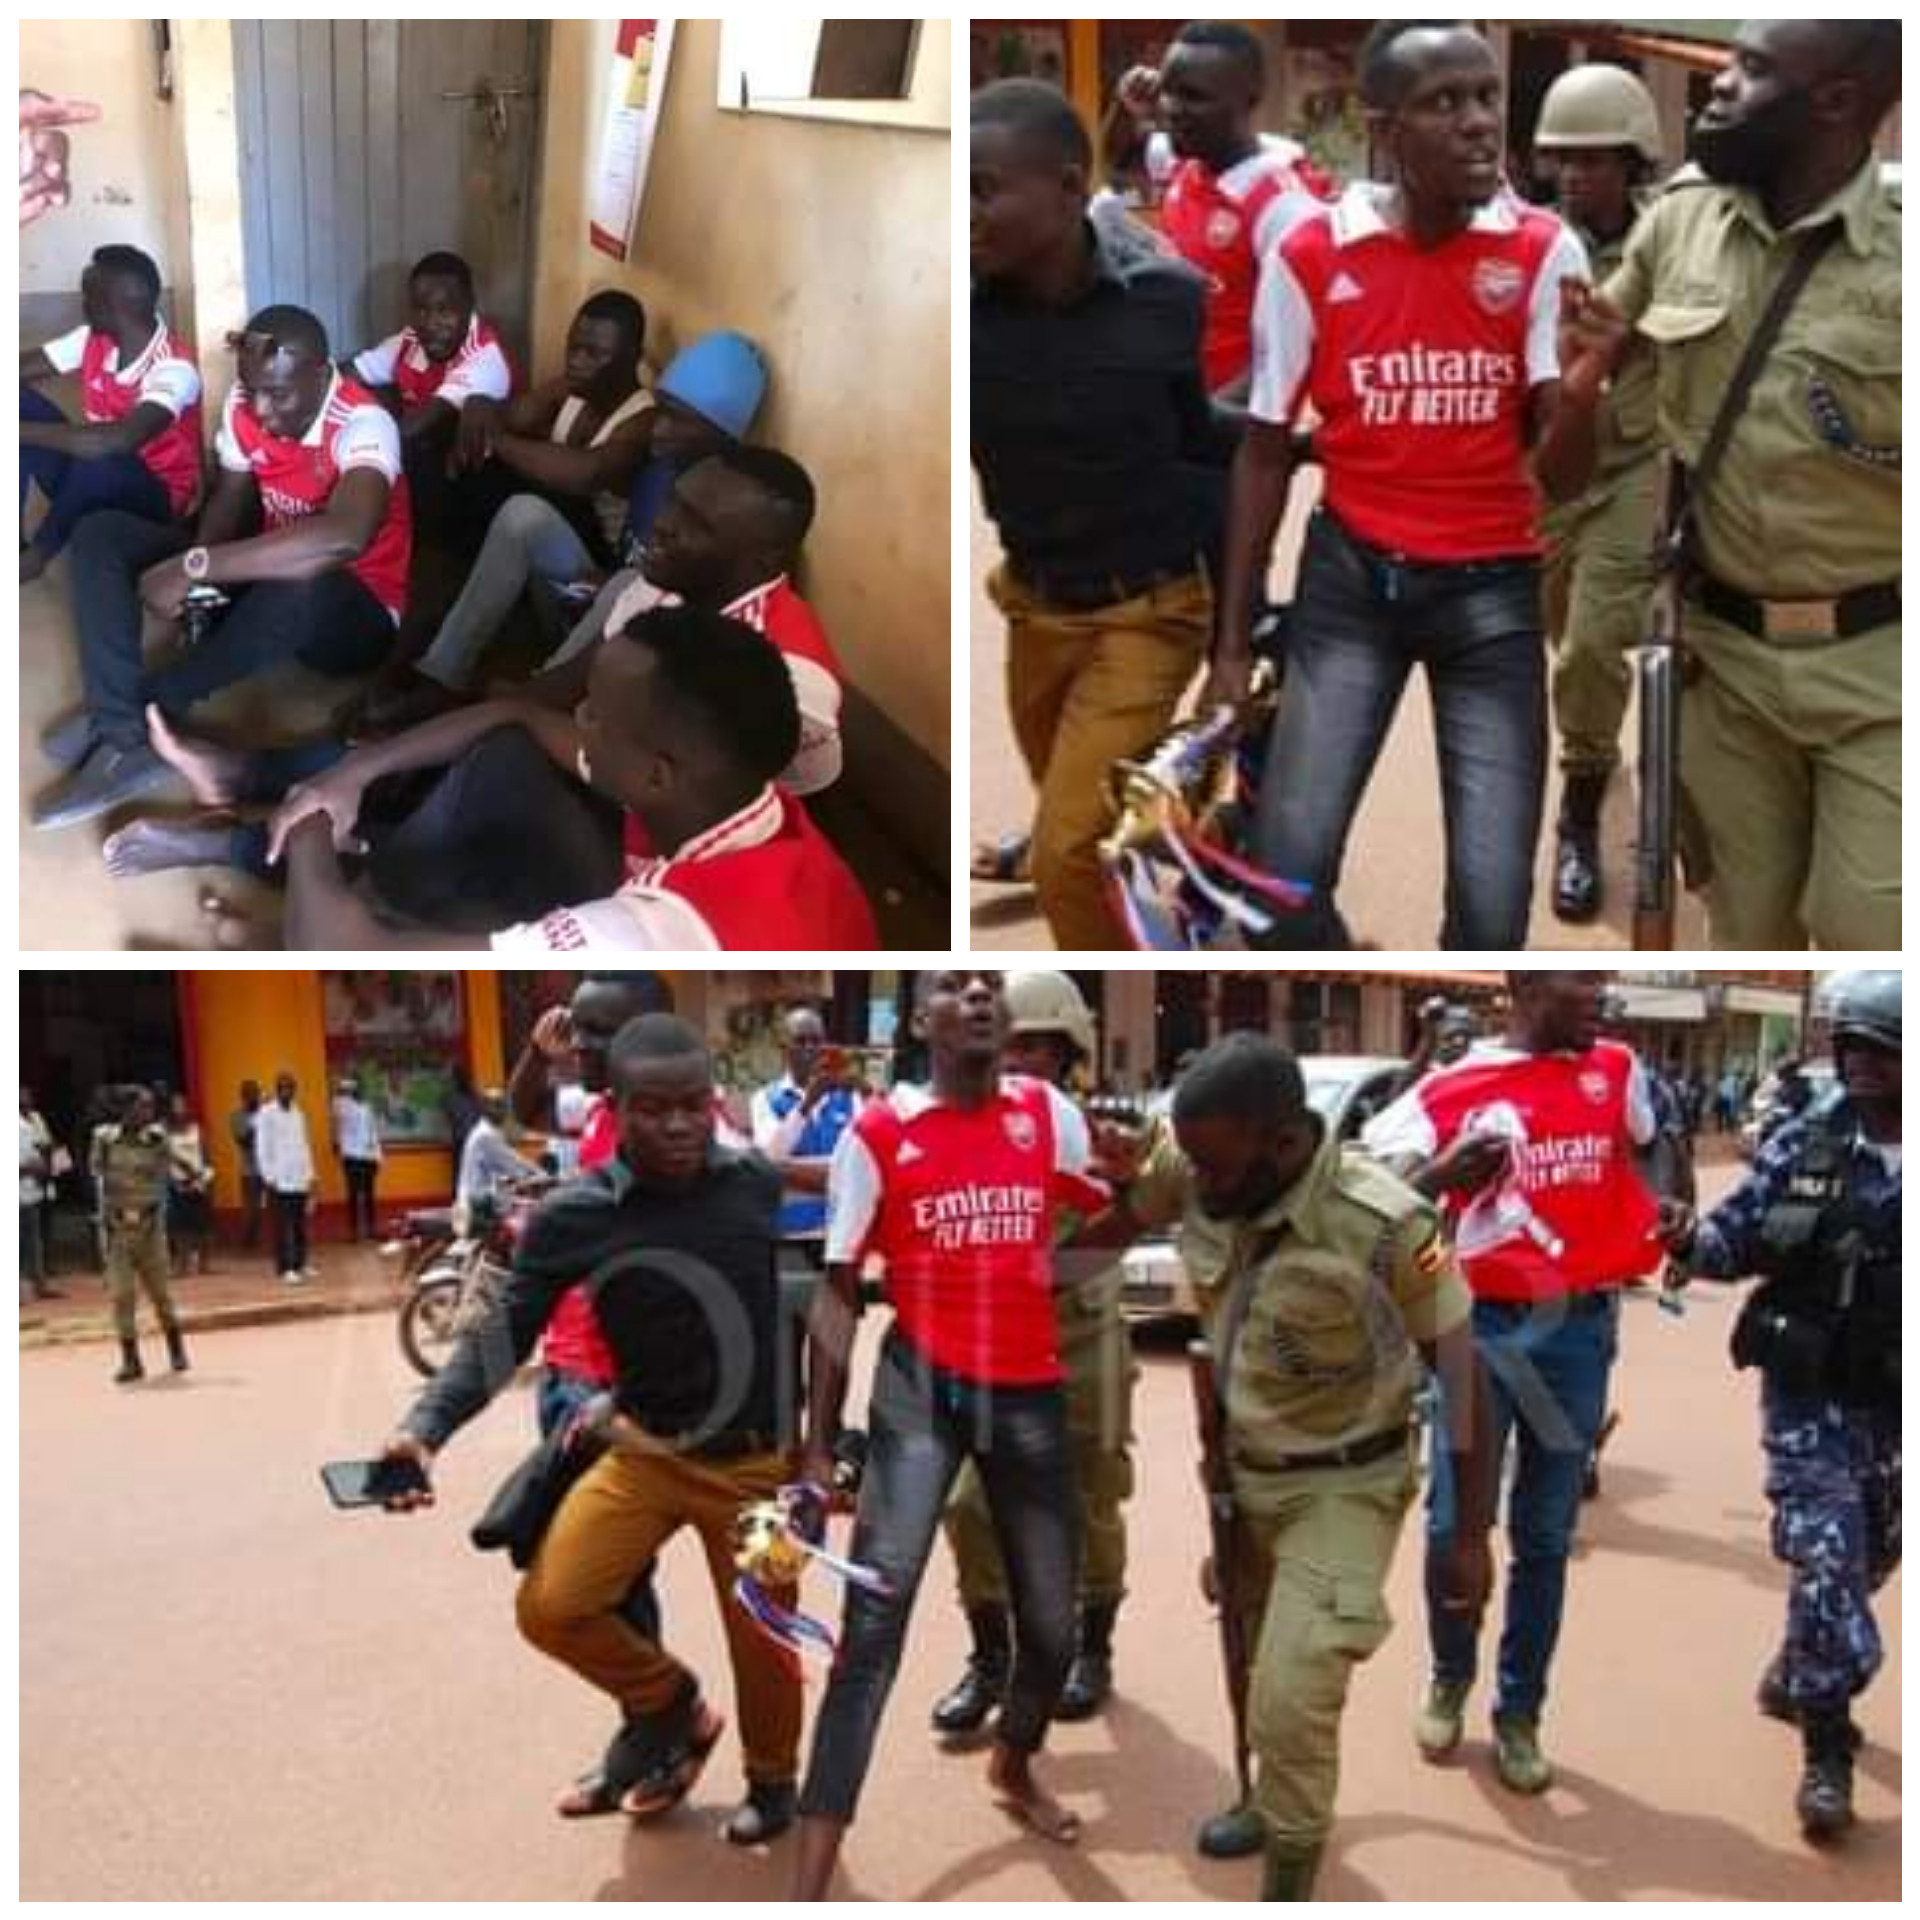 Jubilant Arsenal fans arrested in Uganda for holding